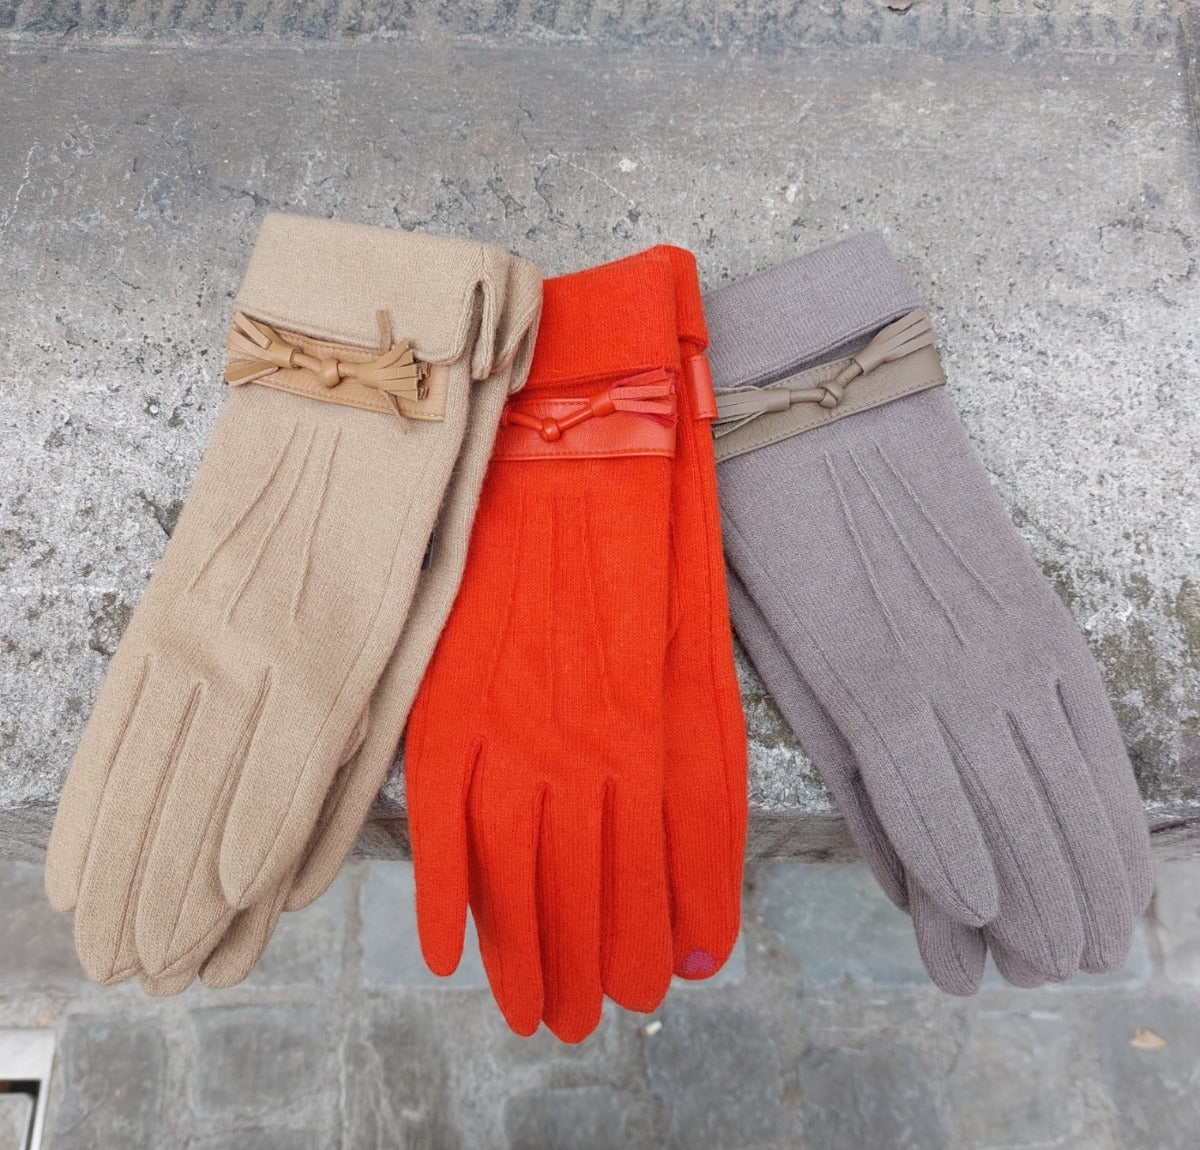 Handschoenen wol lintje oranje